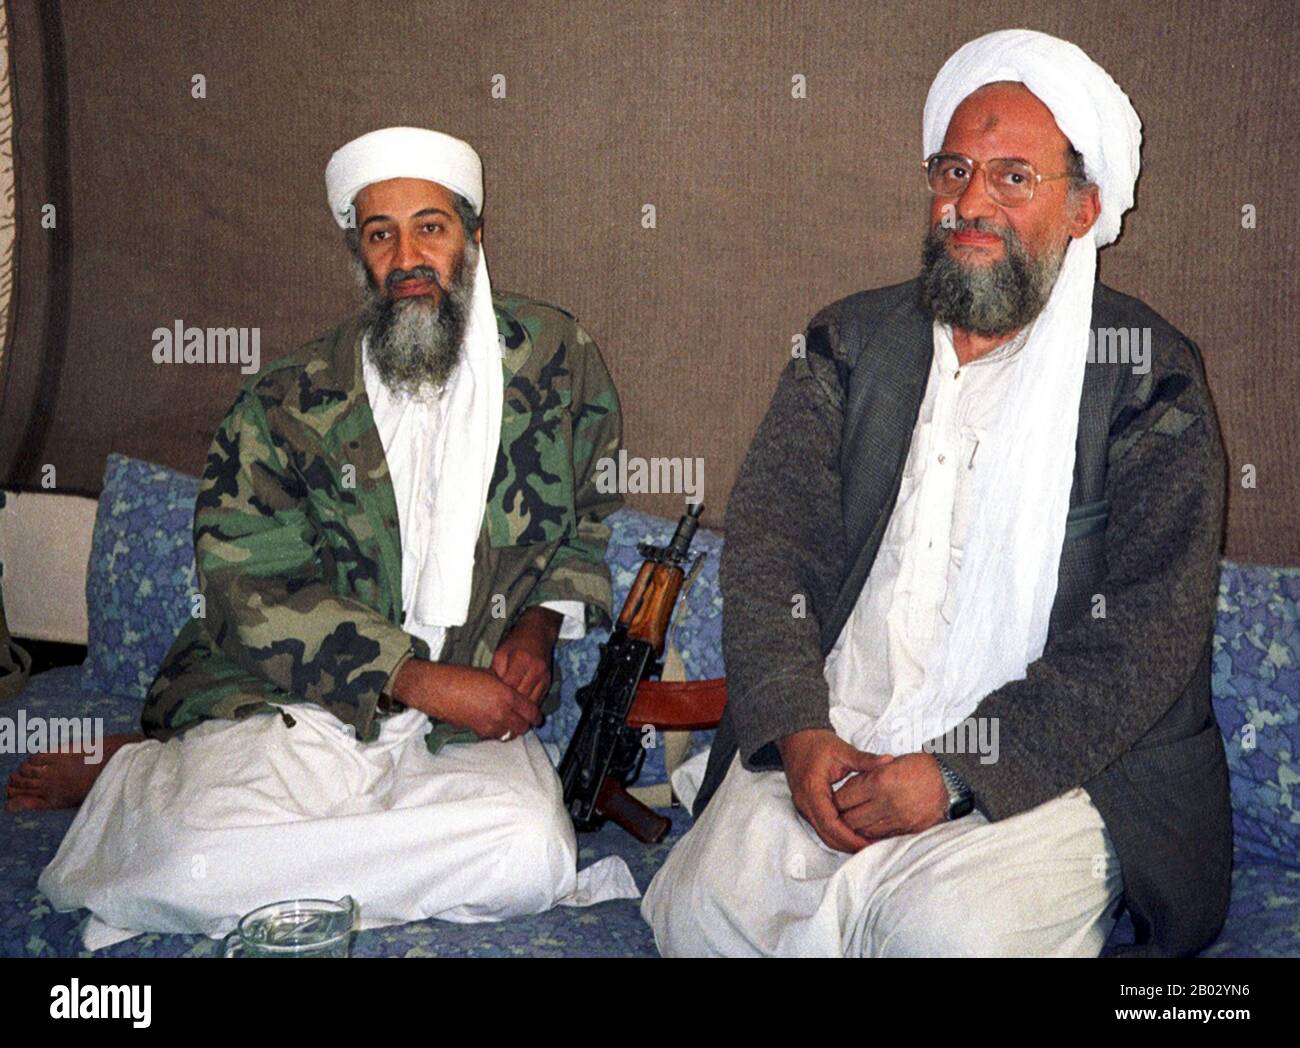 Afghanistan: Osama bin Laden (10 marzo 1957 – 2 maggio 2011), fondatore di al-Qaeda e prominente jihadi (sinistra) con il suo vice e successore Ayman al Zawahiri (19 giugno 1951 - 31 luglio 2022), 10 novembre 2001. Foto di Hamid Mir (CC BY-SA 3,0). Osama bin Mohammed bin Awad bin Laden è stato il fondatore di al-Qaeda, l'organizzazione jihadista responsabile degli attacchi del settembre 11 contro gli Stati Uniti e di altri attacchi di massa contro obiettivi civili e militari. Era un membro della ricca famiglia Saudita bin Laden. Ayman Mohammed al-Zawahiri era un egiziano ed ex leader di al-Qaeda. Foto Stock